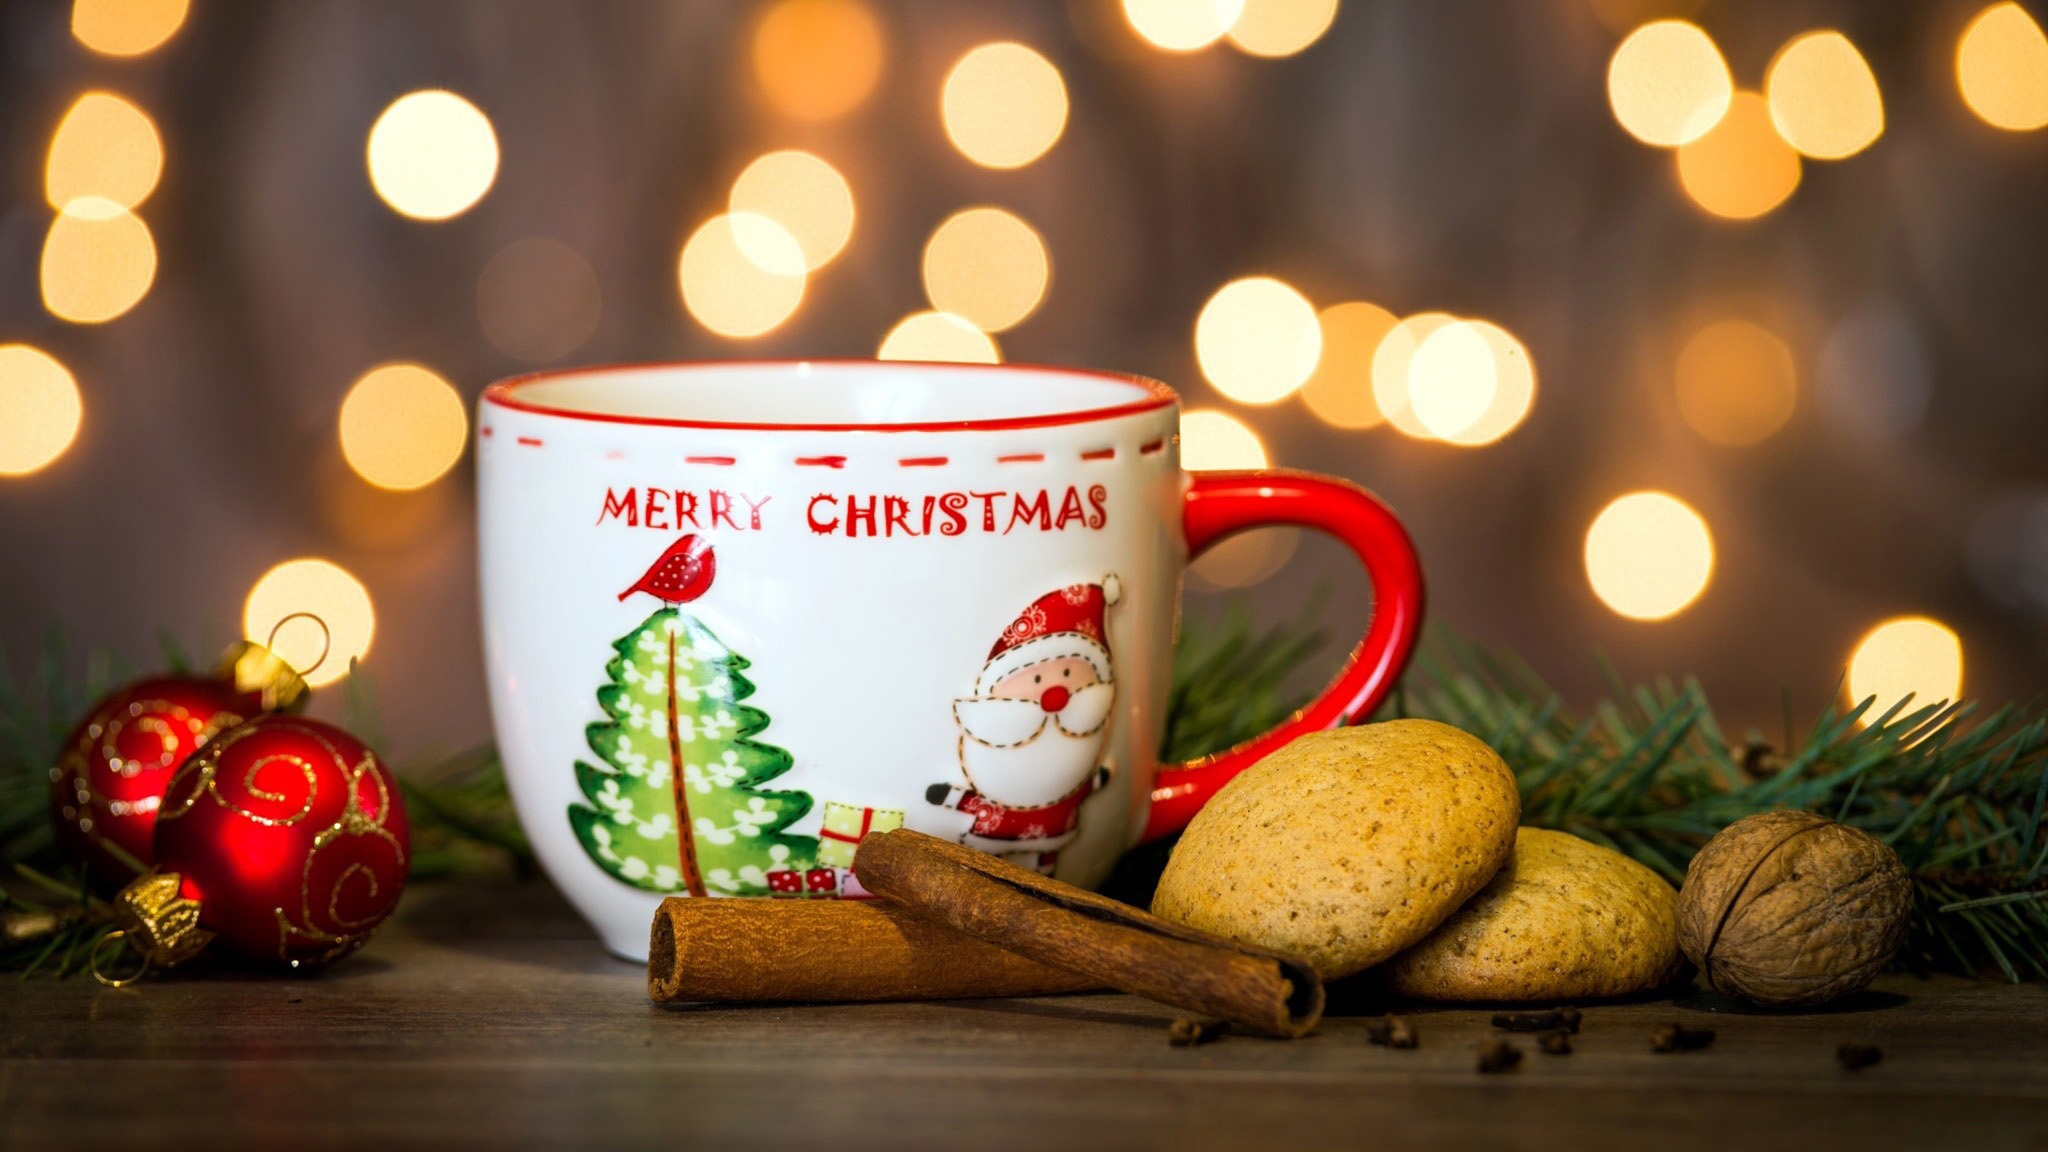 Кружка с надписью Merry Christmas / Веселого Рождества, печенье, палочки корицы и новогодние шарики на столе на фоне боке